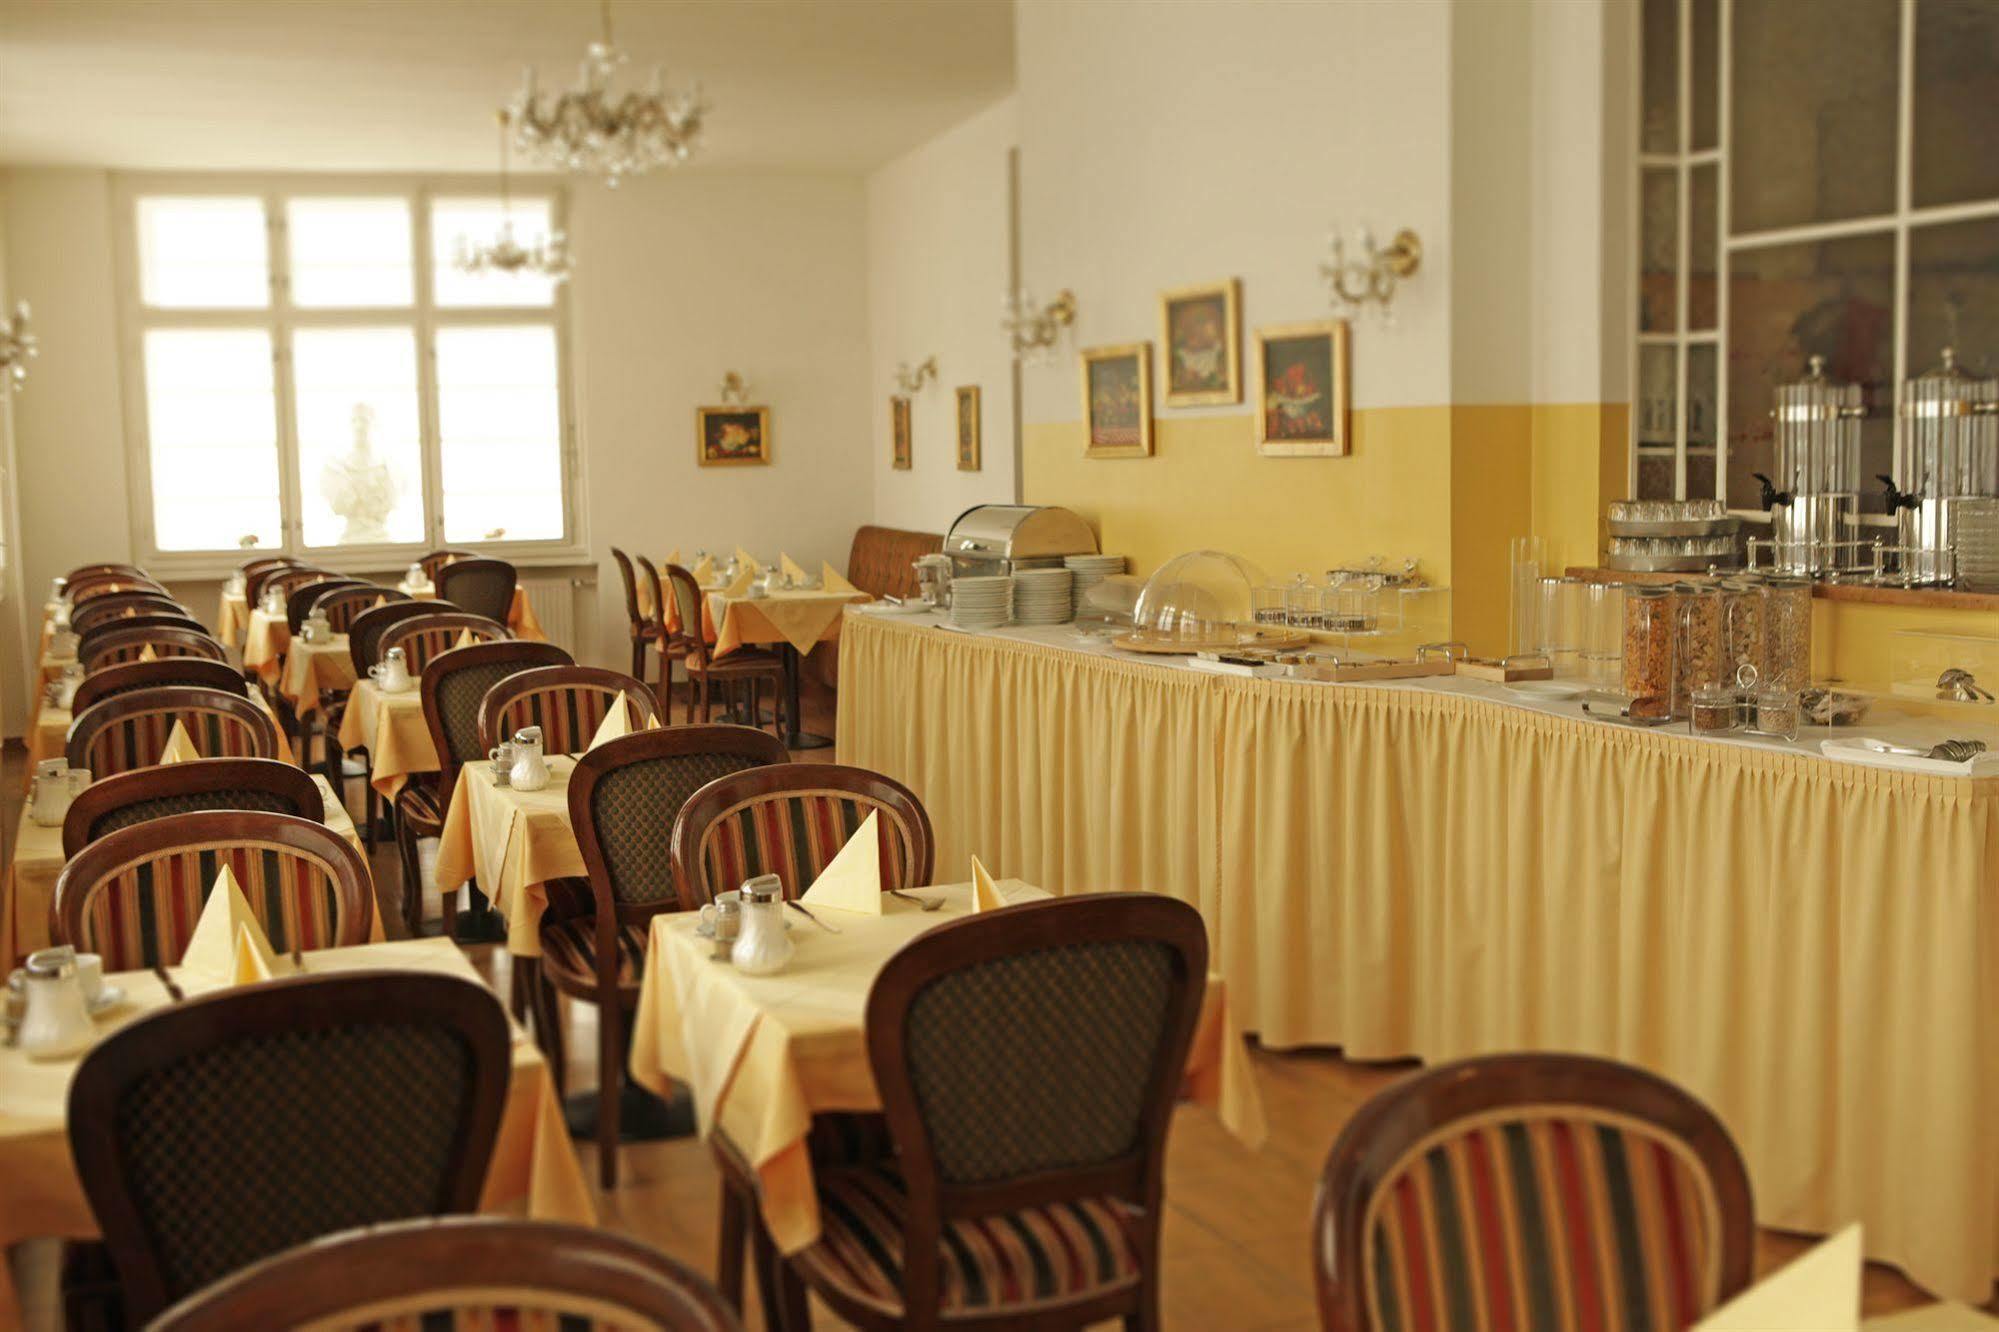 Hotel Domizil Vienna Esterno foto